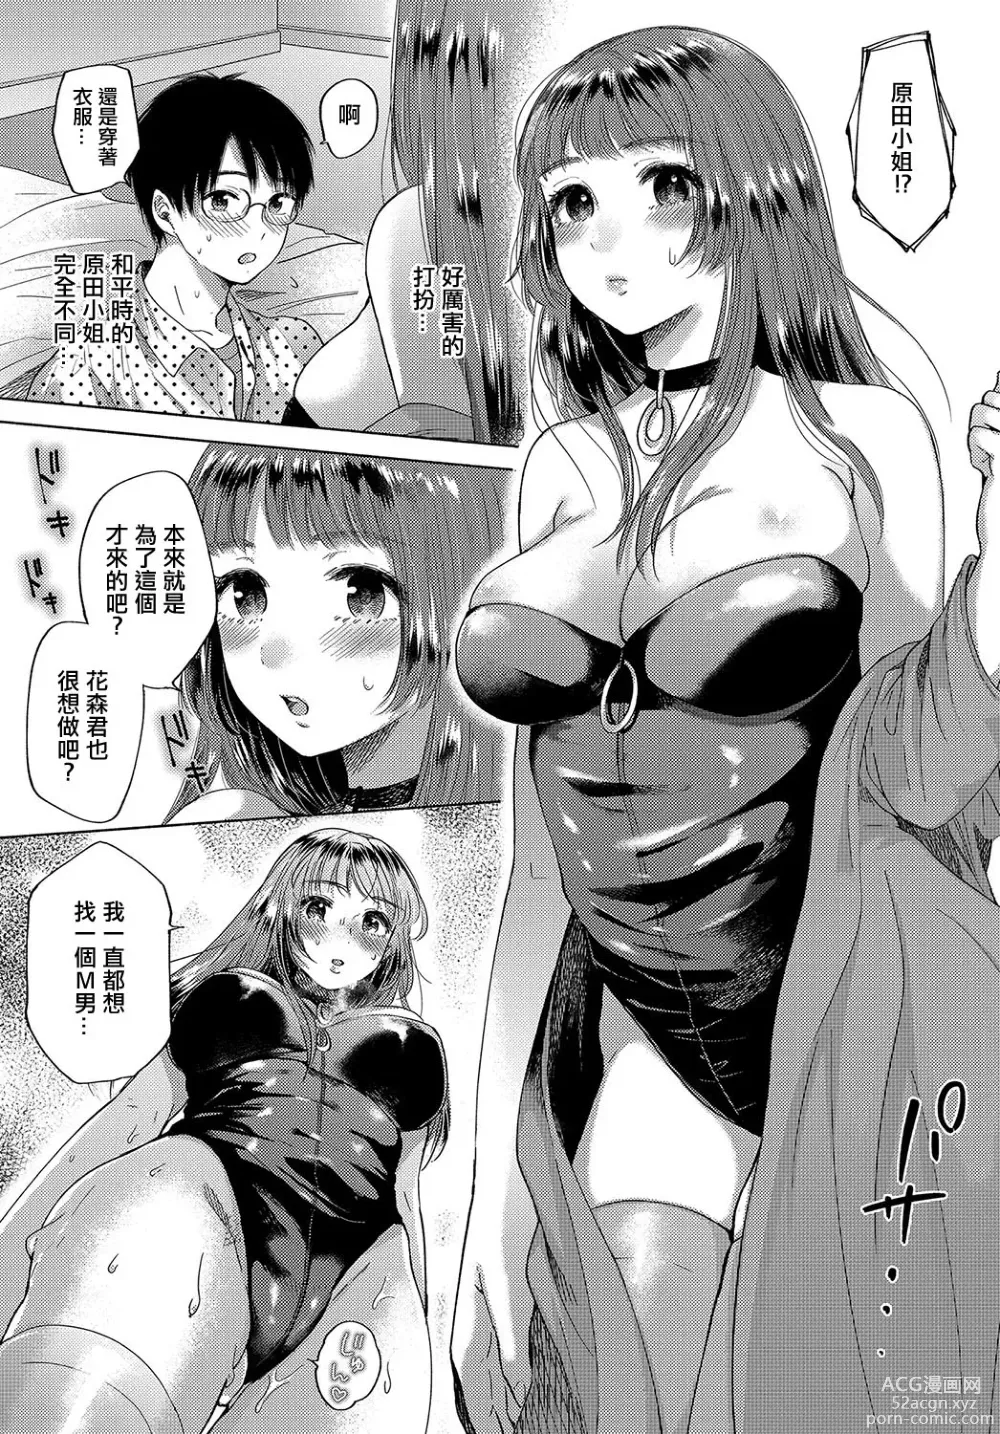 Page 5 of manga Hokorobi